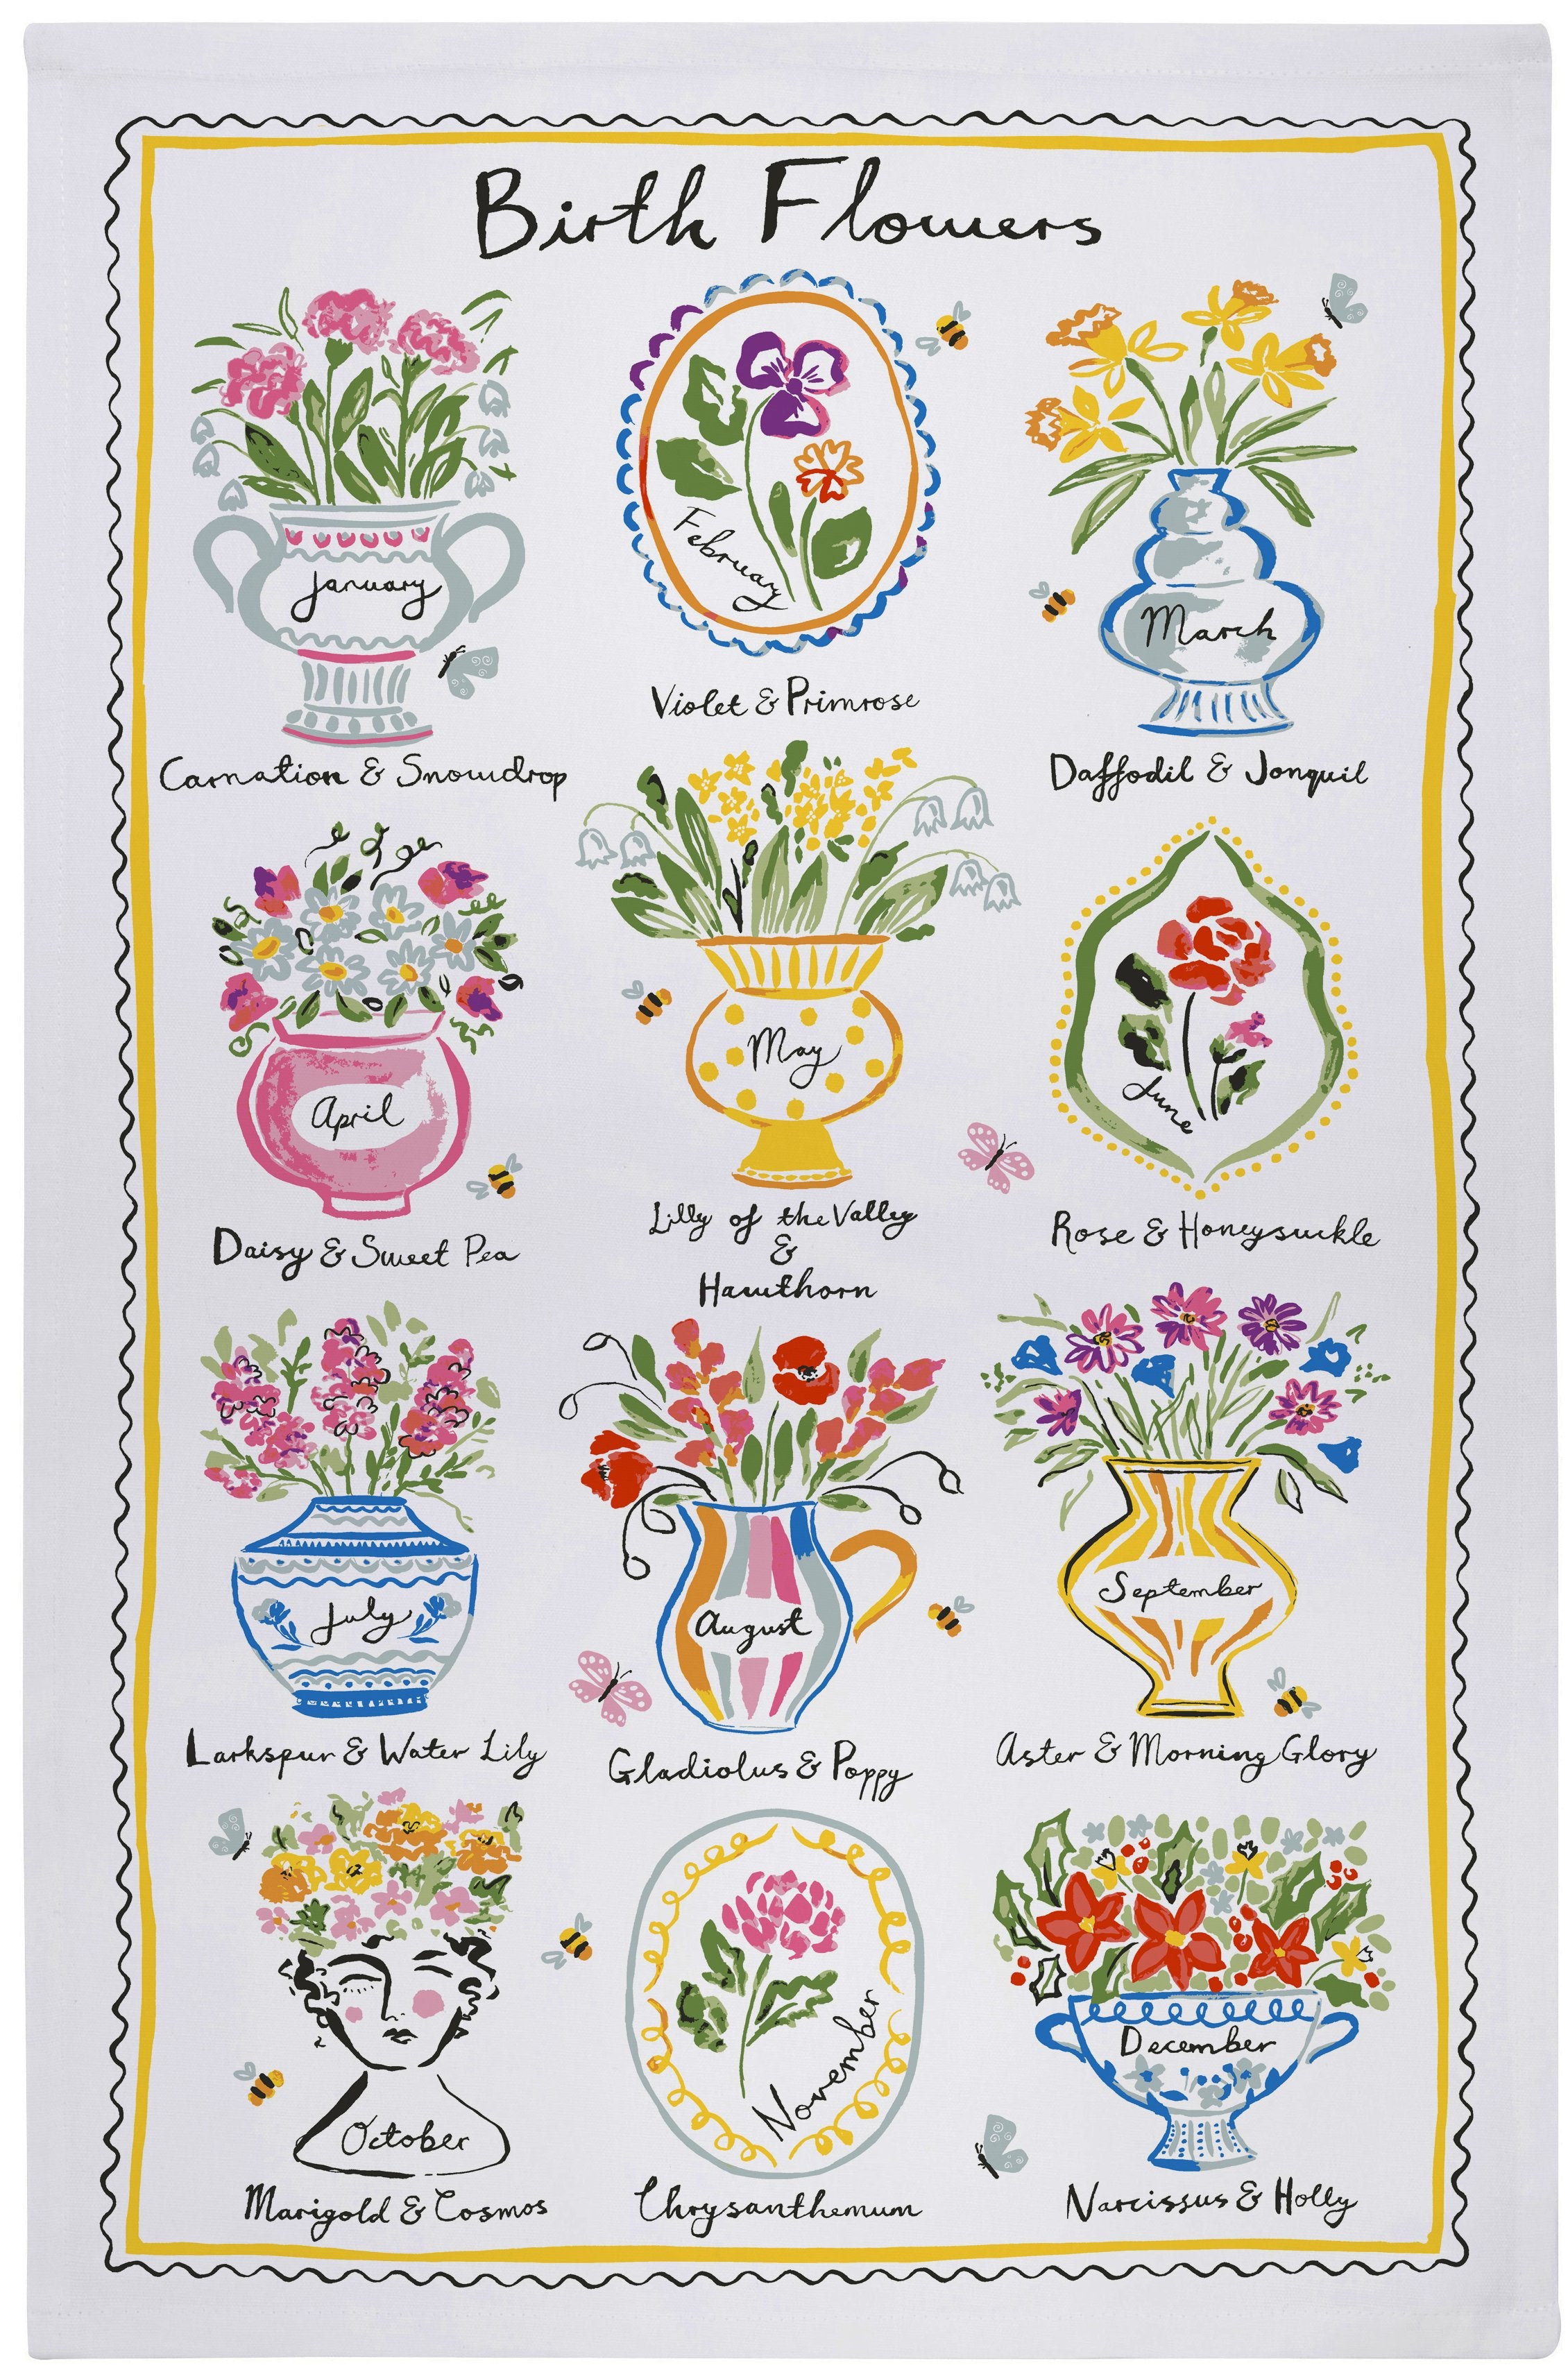 Ulster Weavers, "Birth Flowers", Printed cotton tea towel.